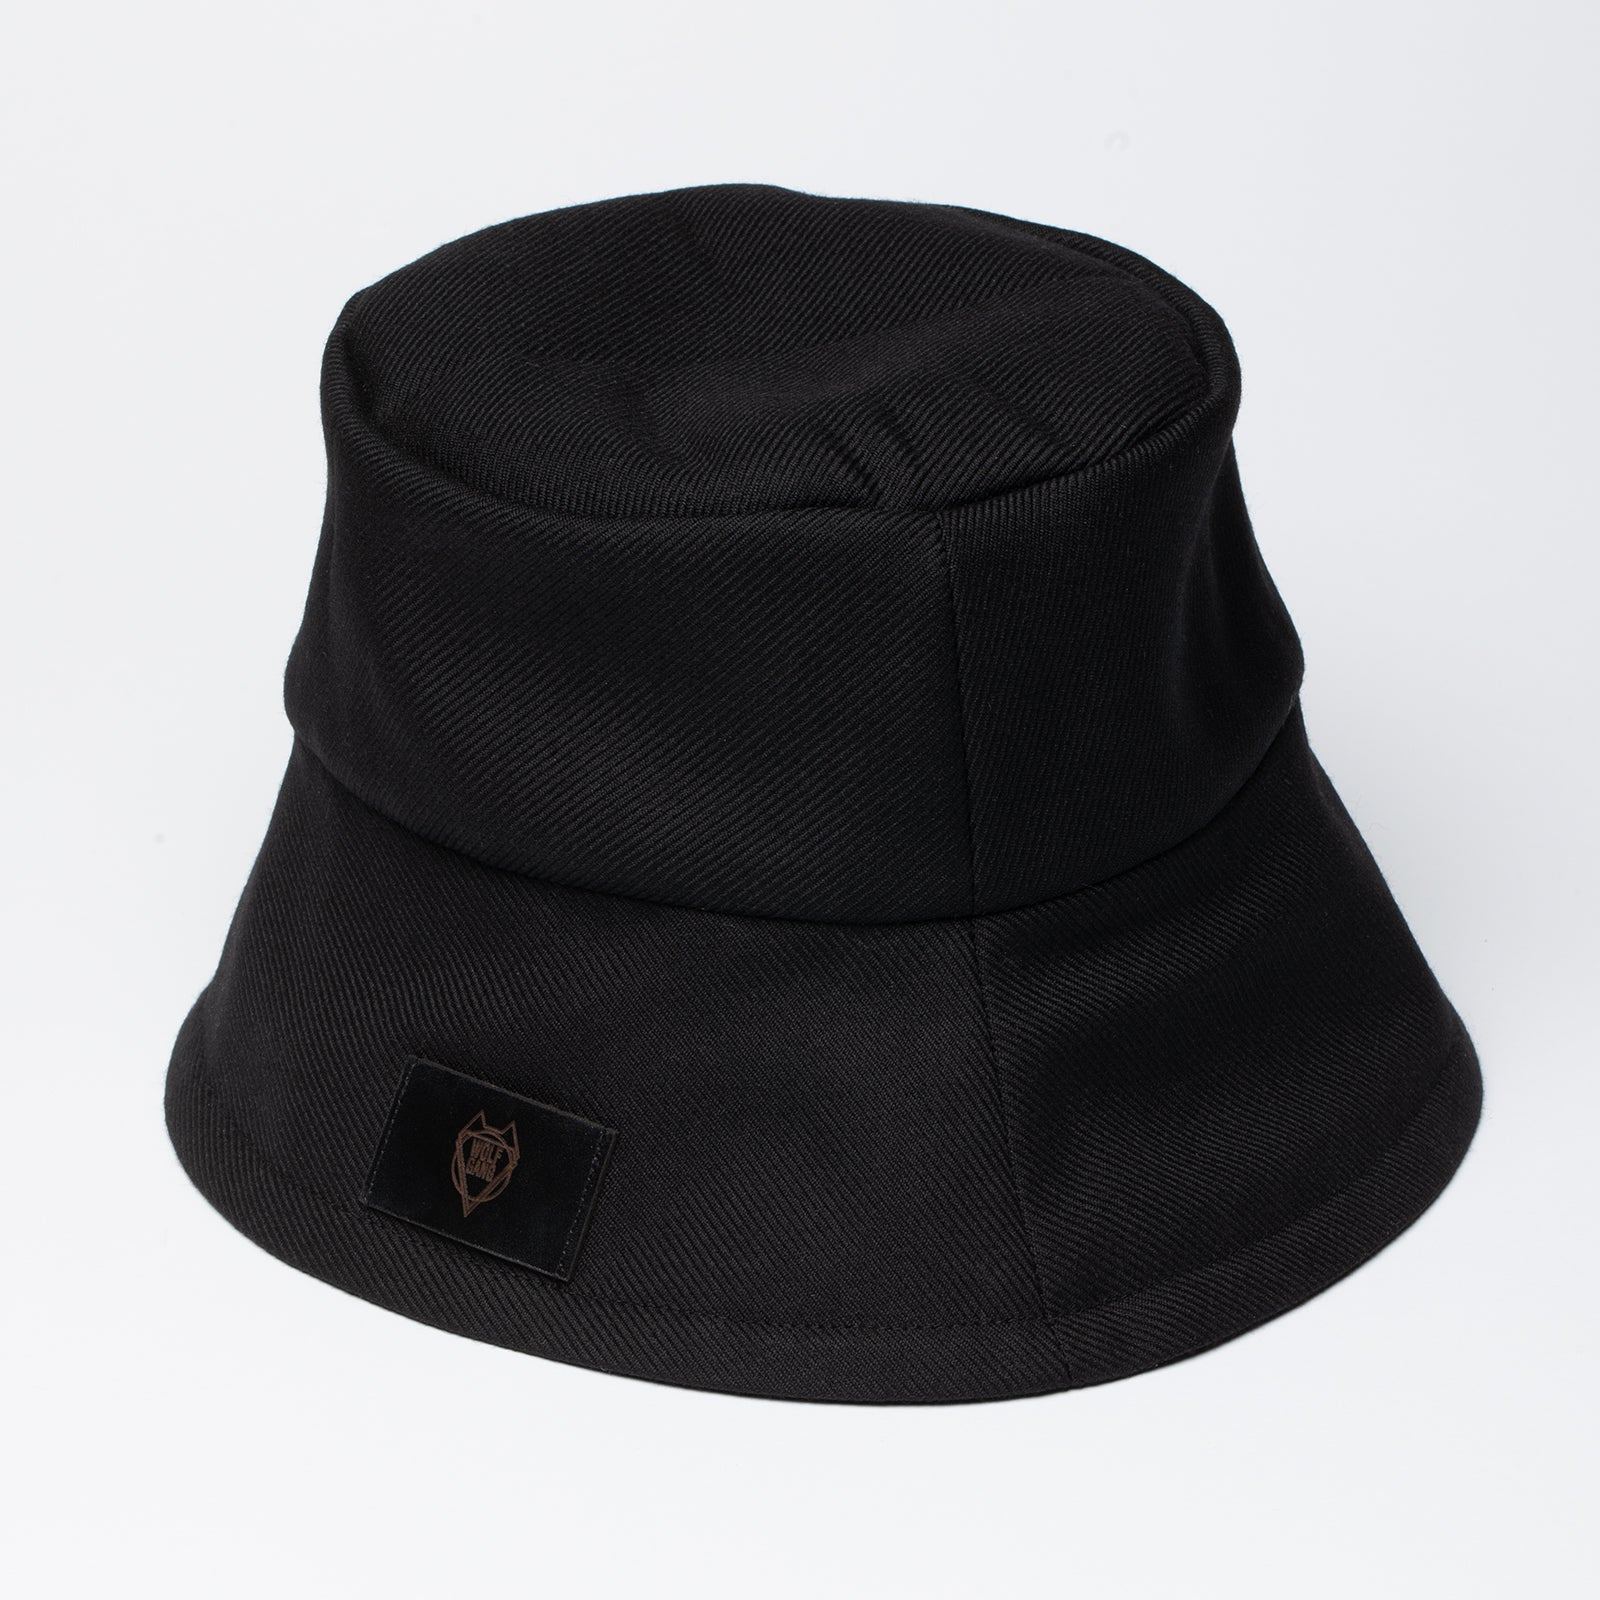 classy wool hat